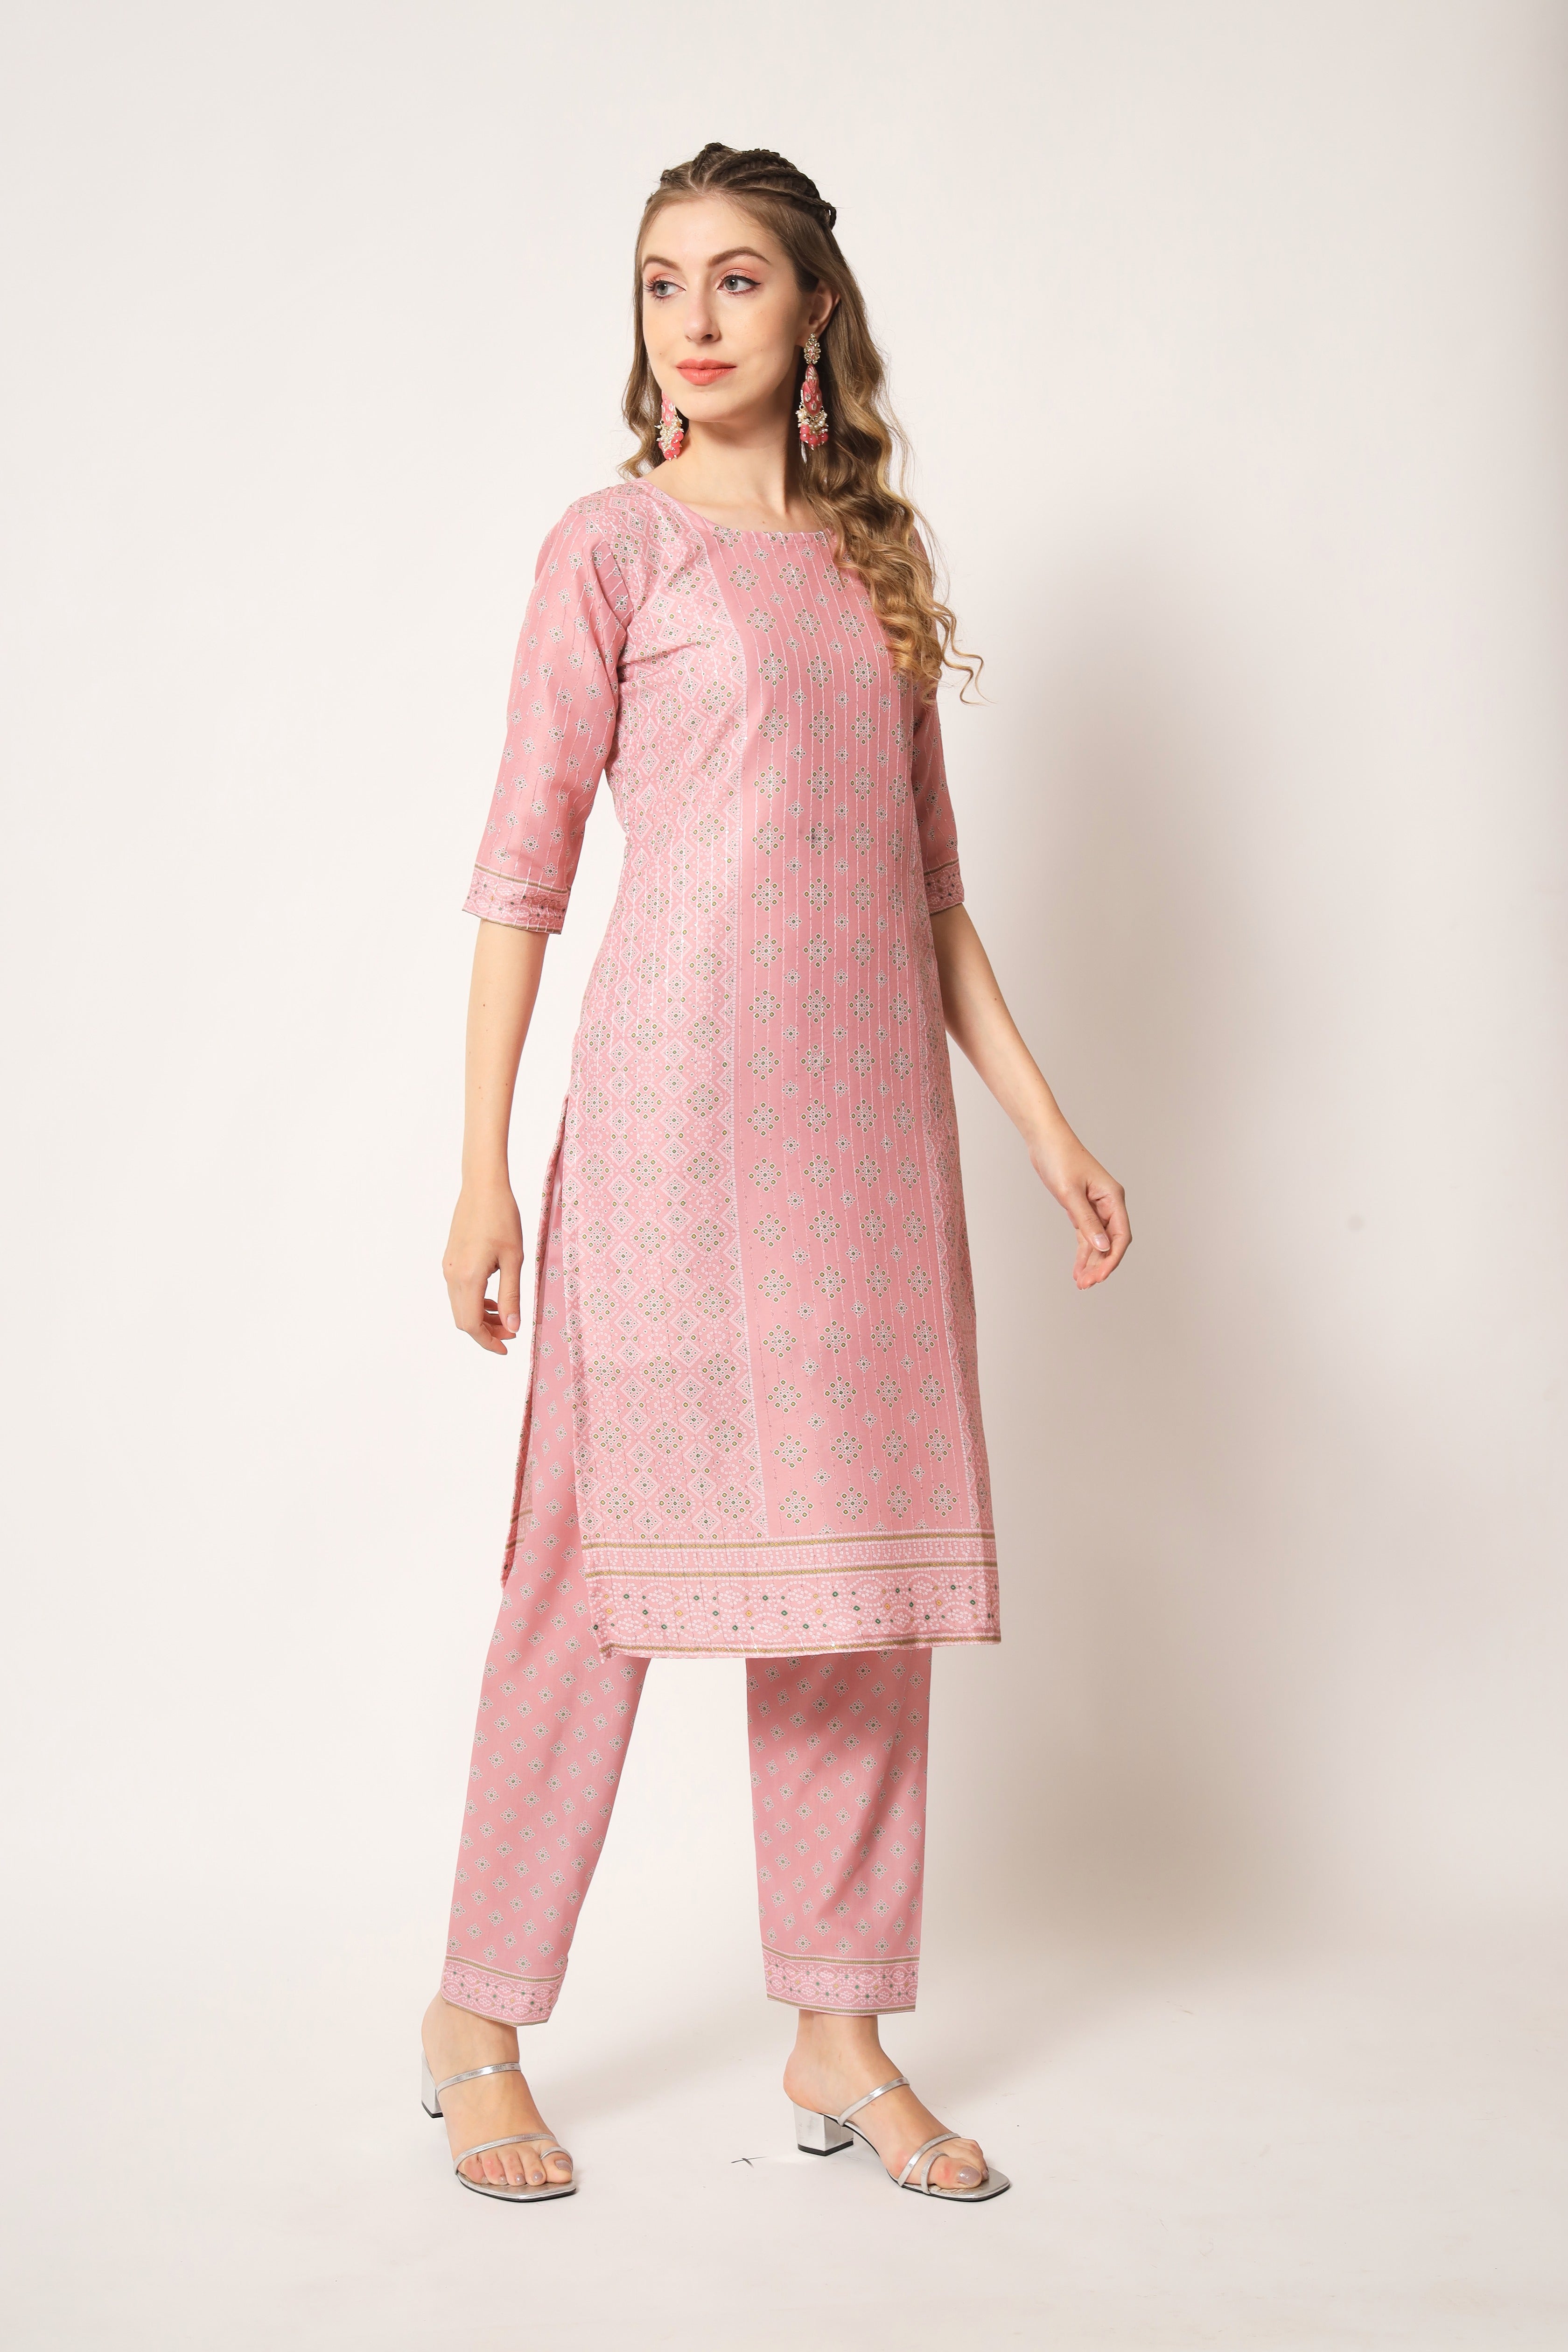 Embroidered Muslin Light Pink Trendy Salwar Kameez For Women